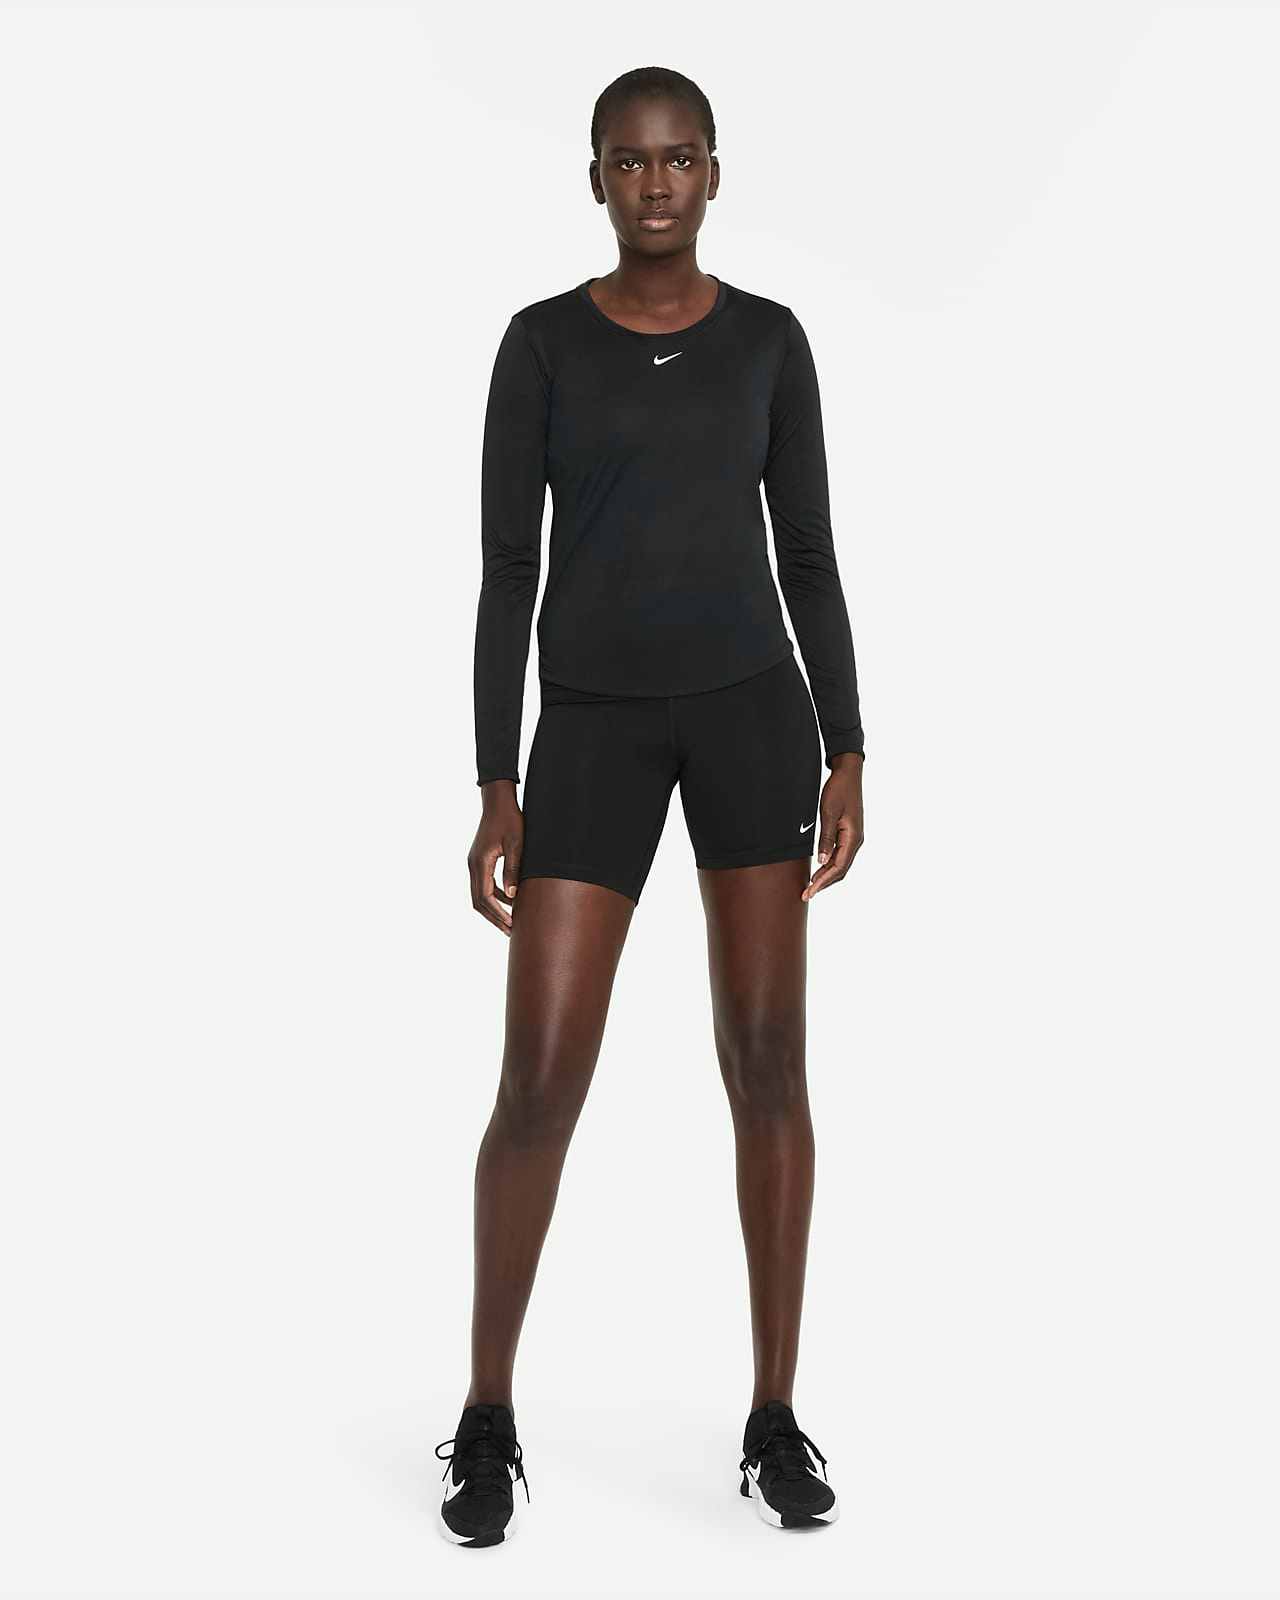 Nike Dri-fit One Long Sleeve